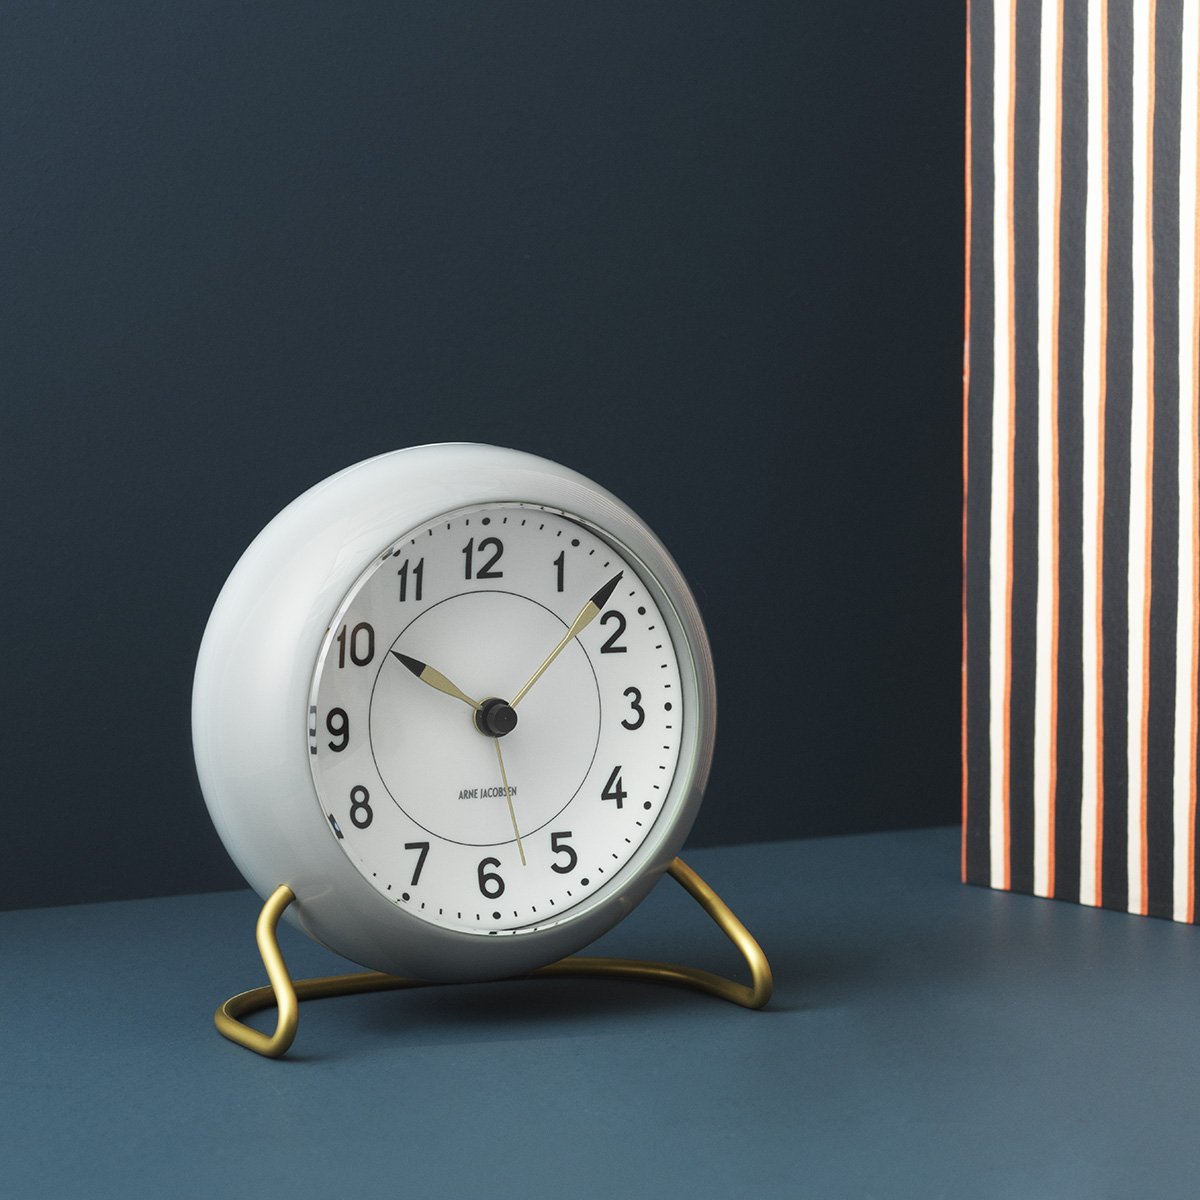 Arne Jacobsen Stasjon Bordur med alarmgrått og hvitt, 12cm